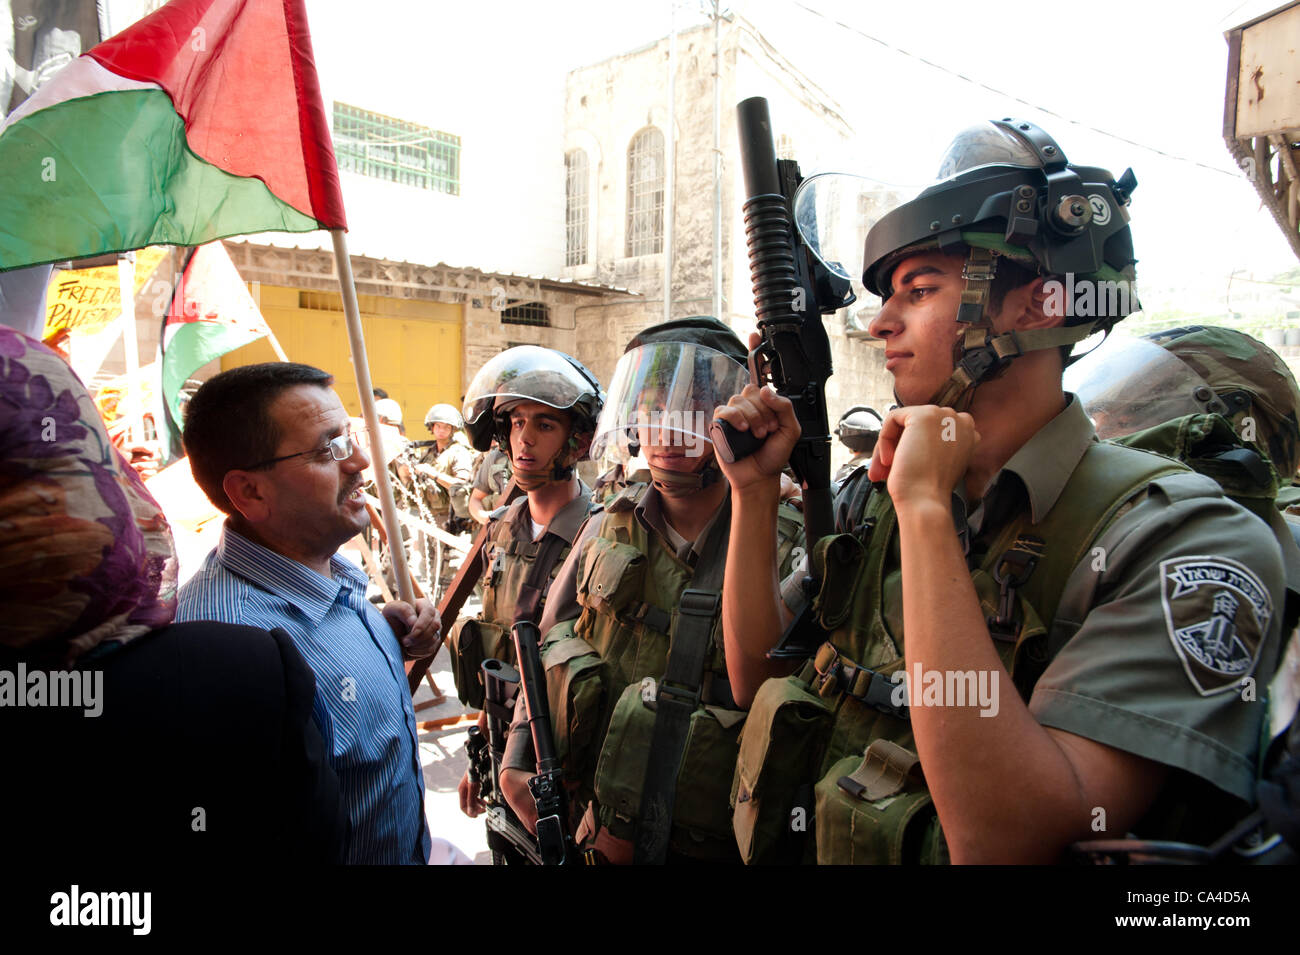 HEBRON, Territori palestinesi - Giugno 5, 2012: un uomo palestinese affronta pesantemente armati soldati israeliani in una manifestazione nonviolenta per commemorare la Naksa Day, l'anniversario dell'occupazione israeliana dei territori palestinesi nel 1967. Foto Stock